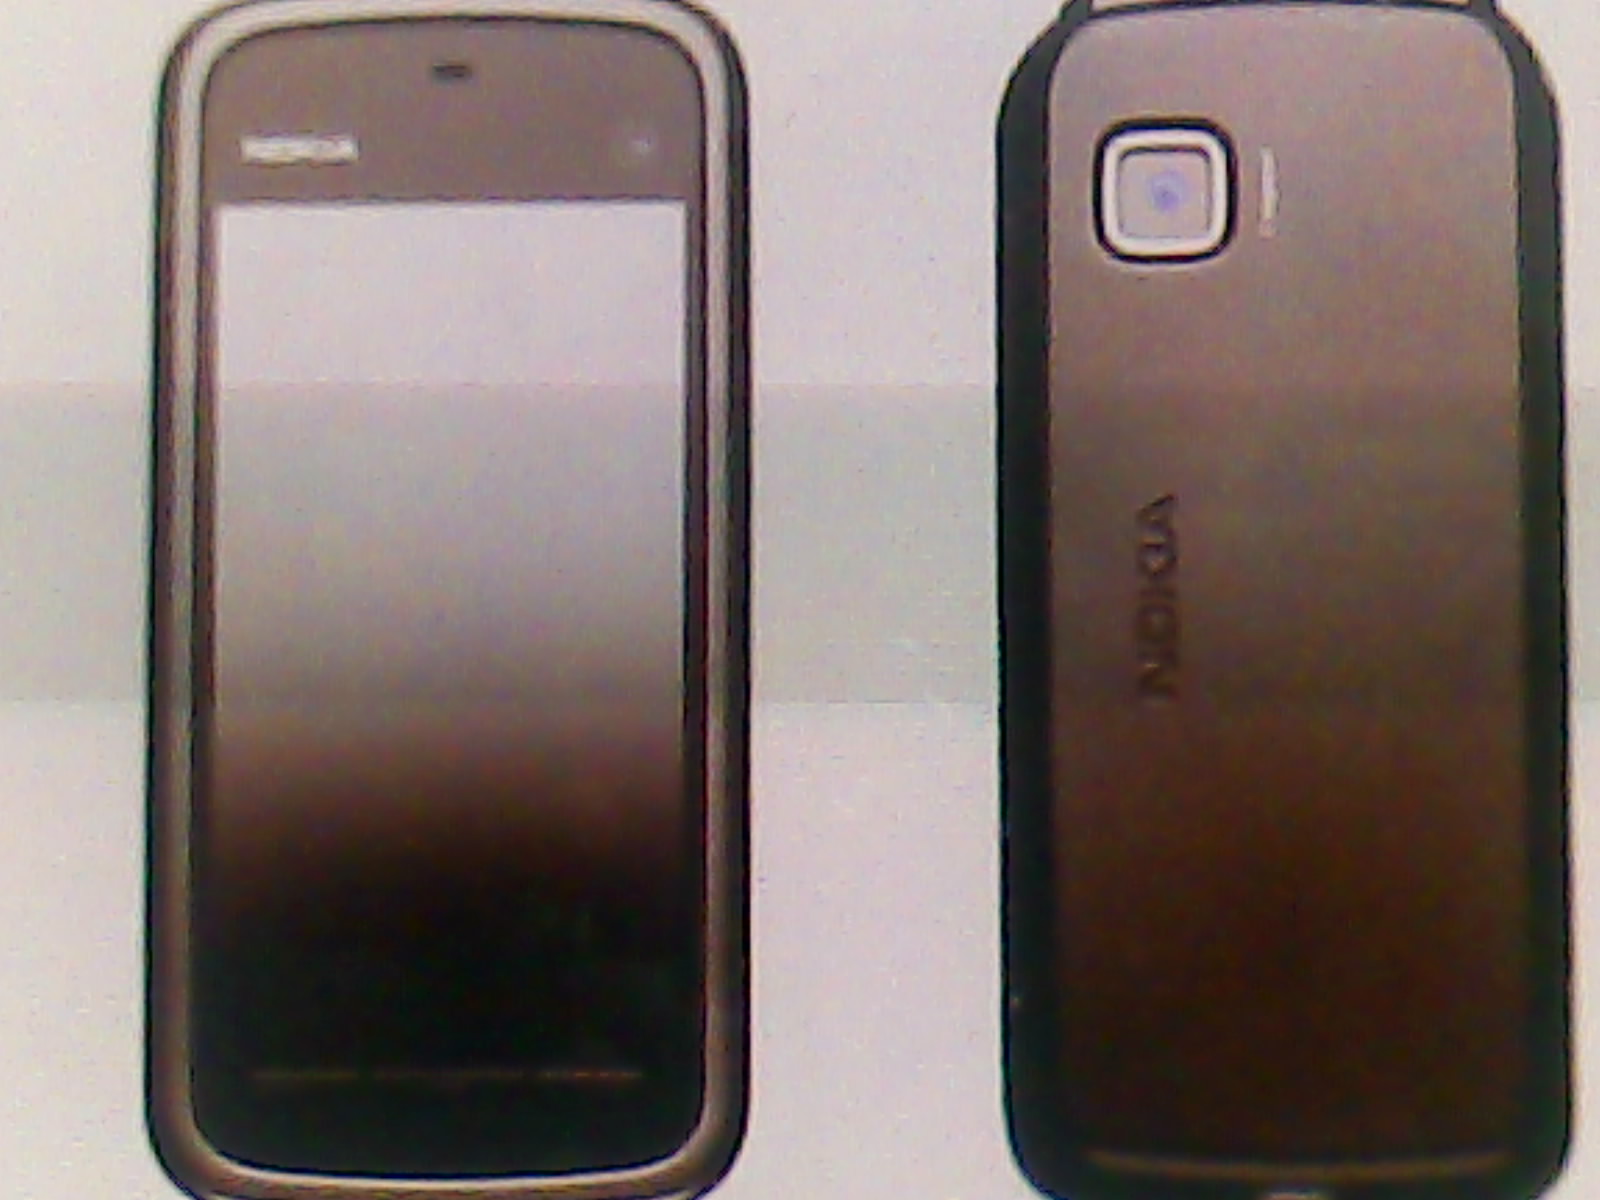 Nokia 5230 black